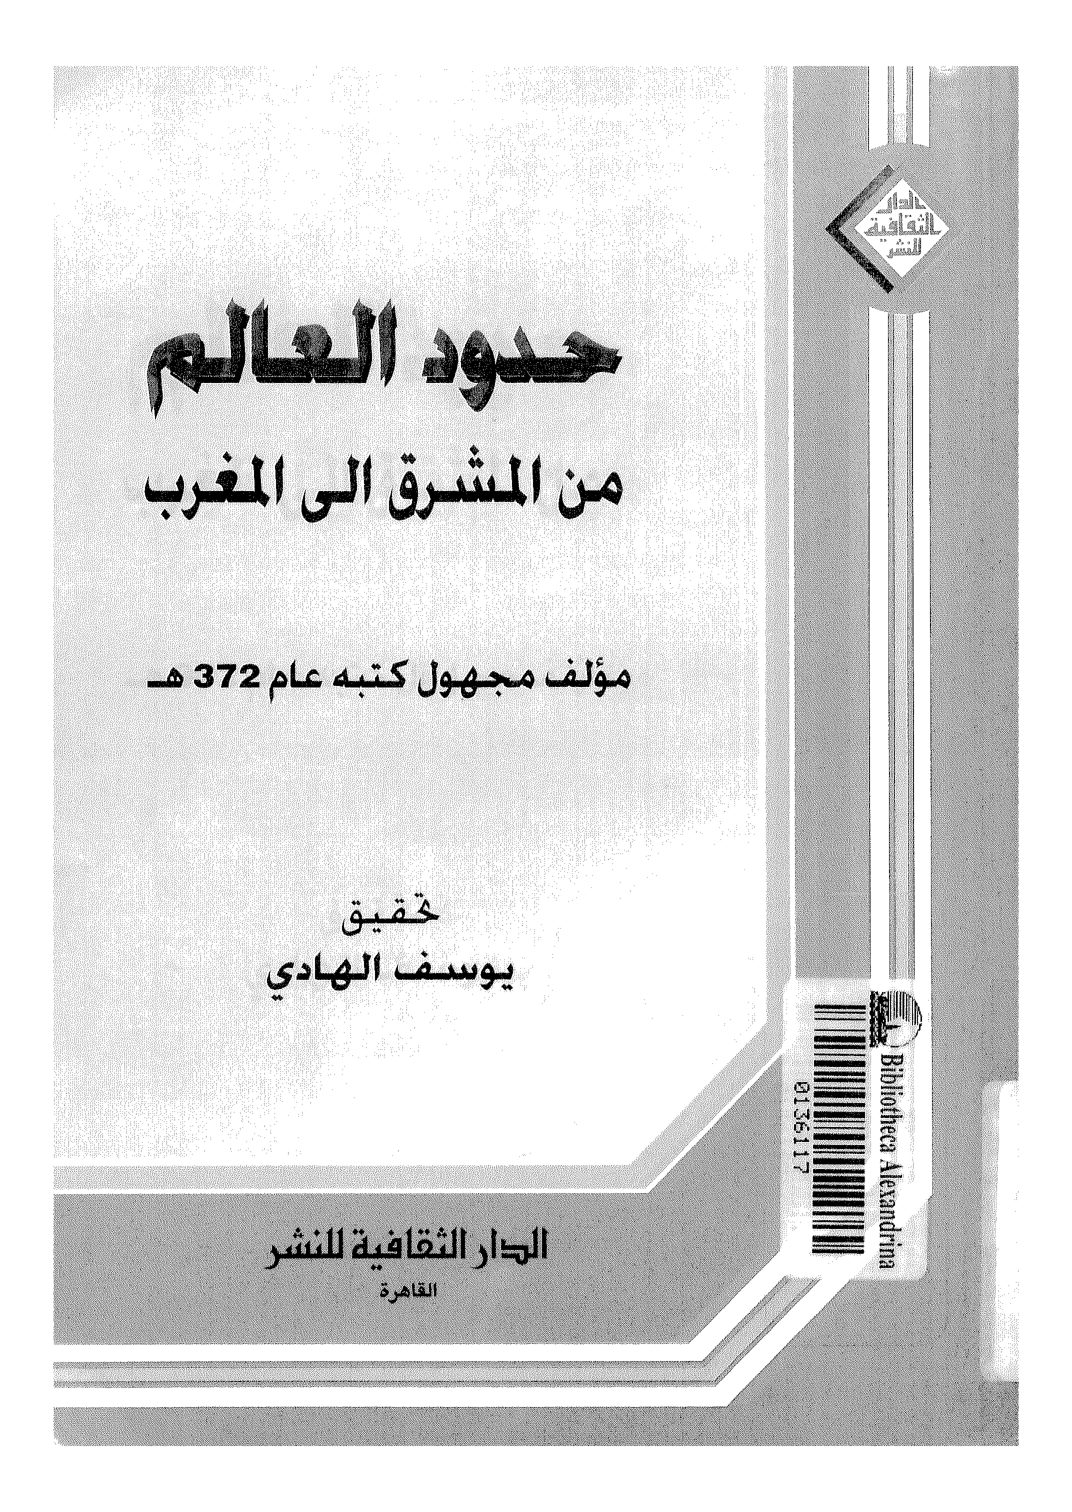 تحميل وقراءة أونلاين كتاب حدود العالم من المشرق إلى المغرب pdf مجاناً | مكتبة تحميل كتب pdf.